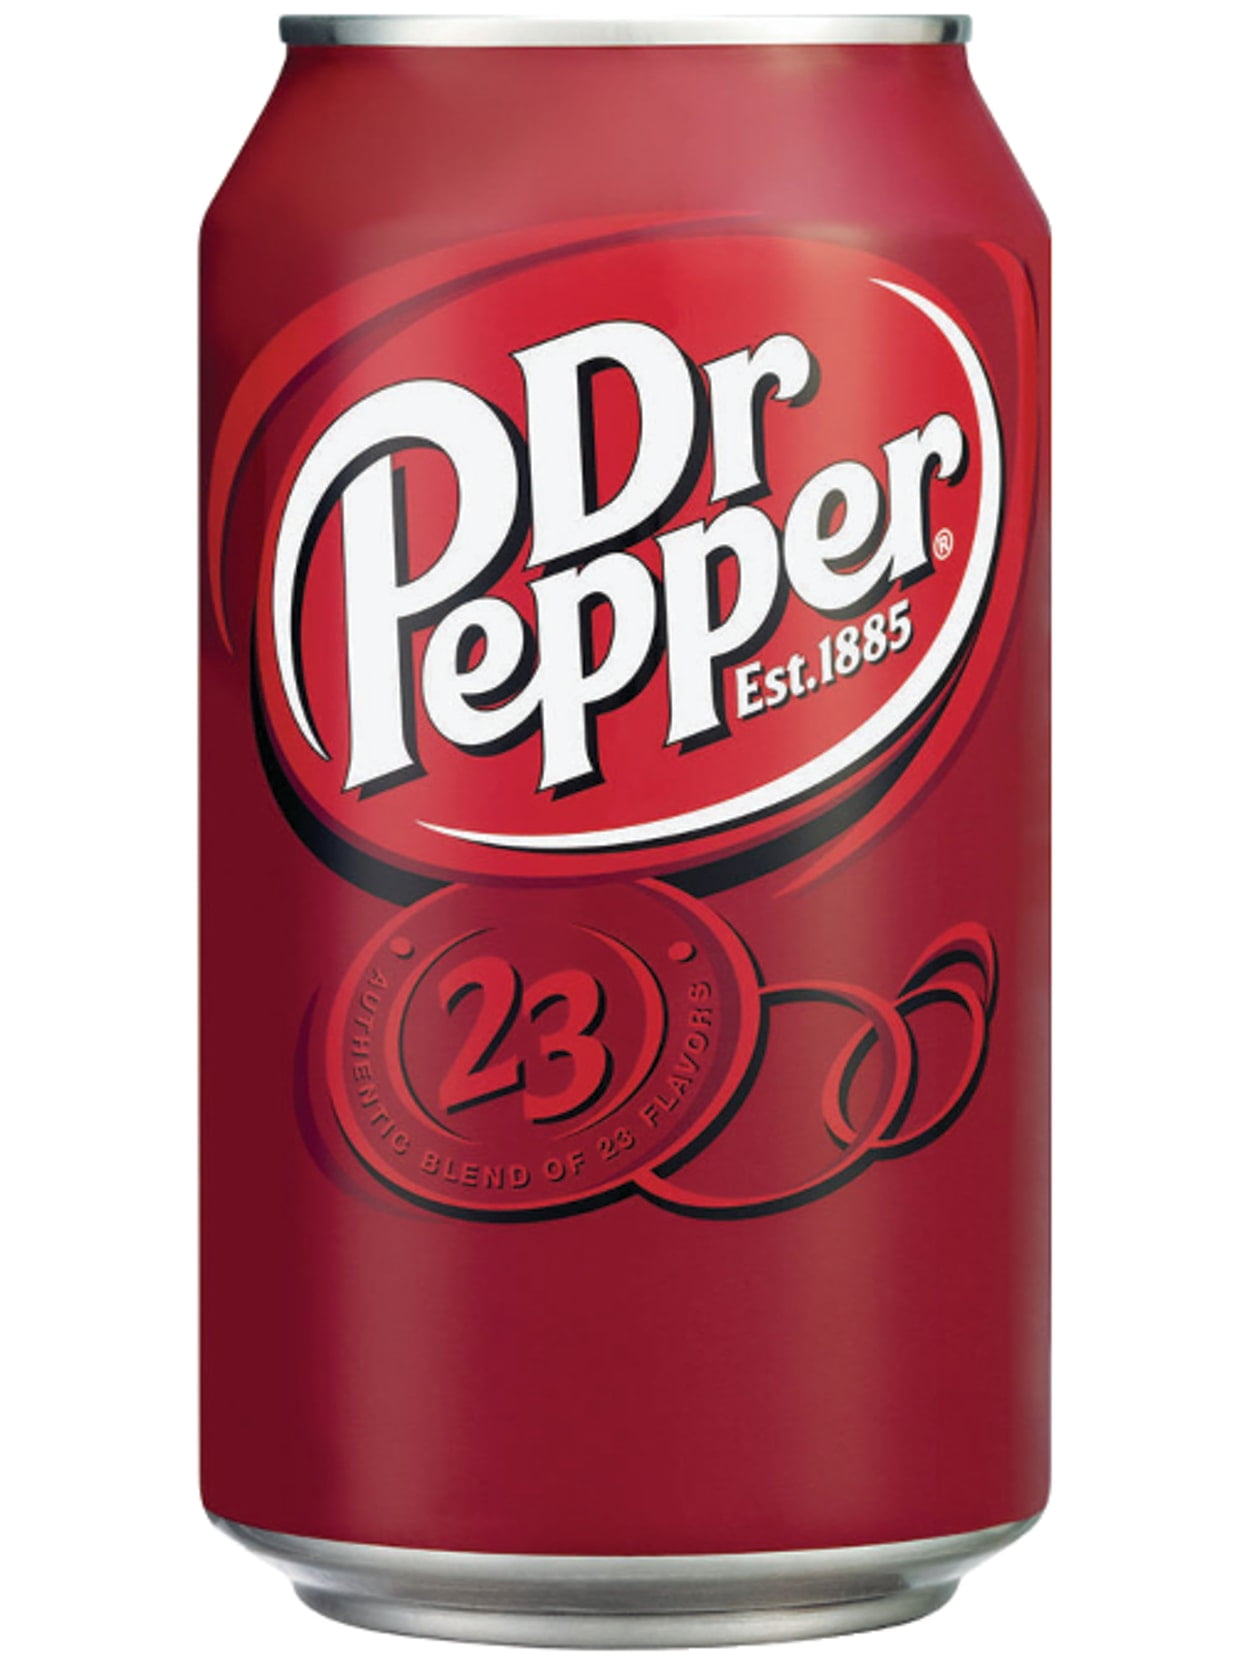 Doctor-Pepper-Soda-12oz-Cans-Pack-of-48_f311a391-8c1c-4b38-b7f7-788d26359f44.4eb13d8fade9191d2c4f05fdc7cca03f.jpeg